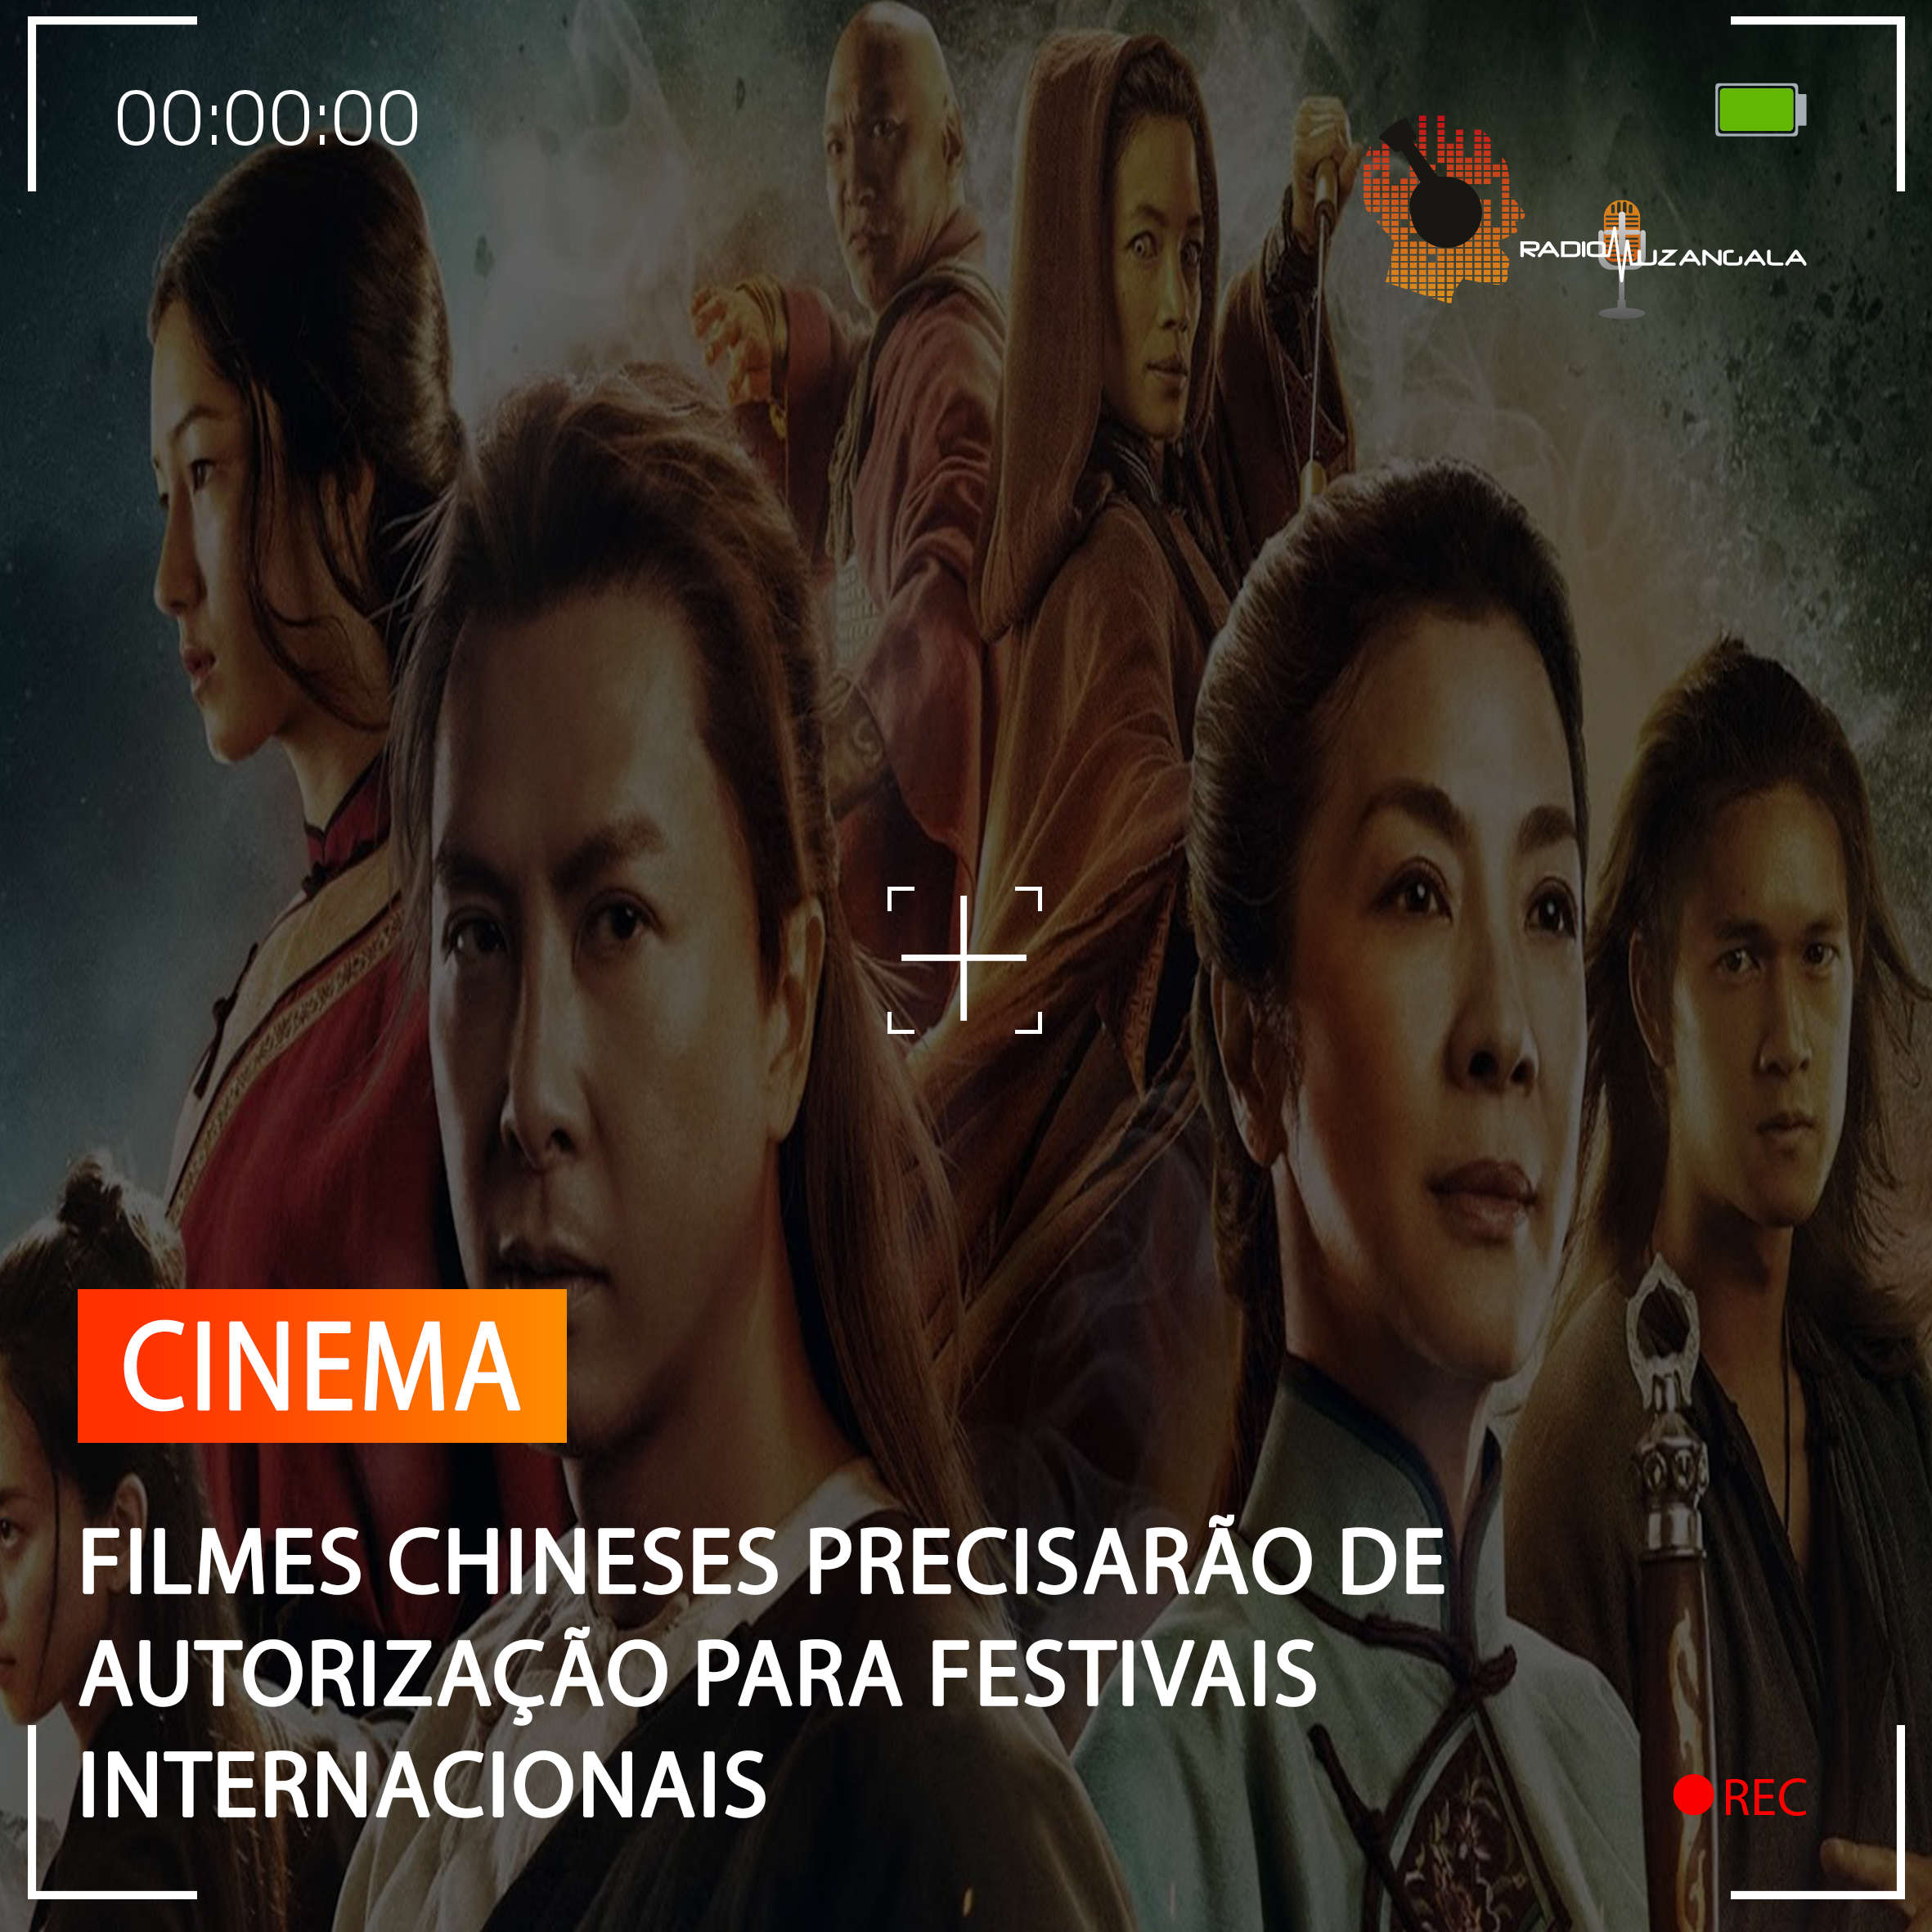  FILMES CHINESES PRECISARÃO DE AUTORIZAÇÃO PARA FESTIVAIS INTERNACIONAIS